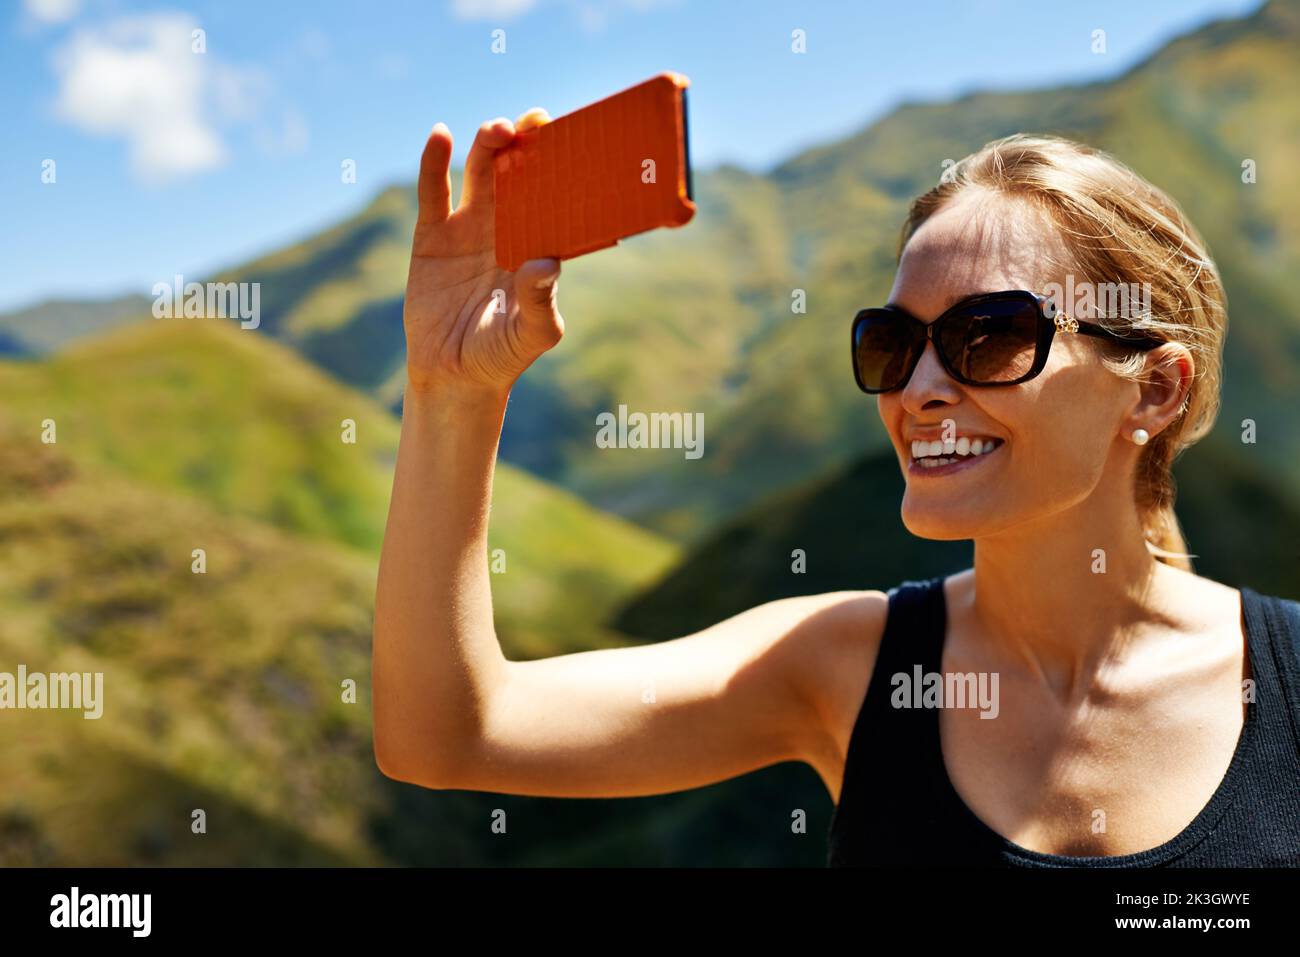 Capturar recuerdos de montaña. Una mujer joven tomando una fotografía en la ladera de la montaña. Foto de stock